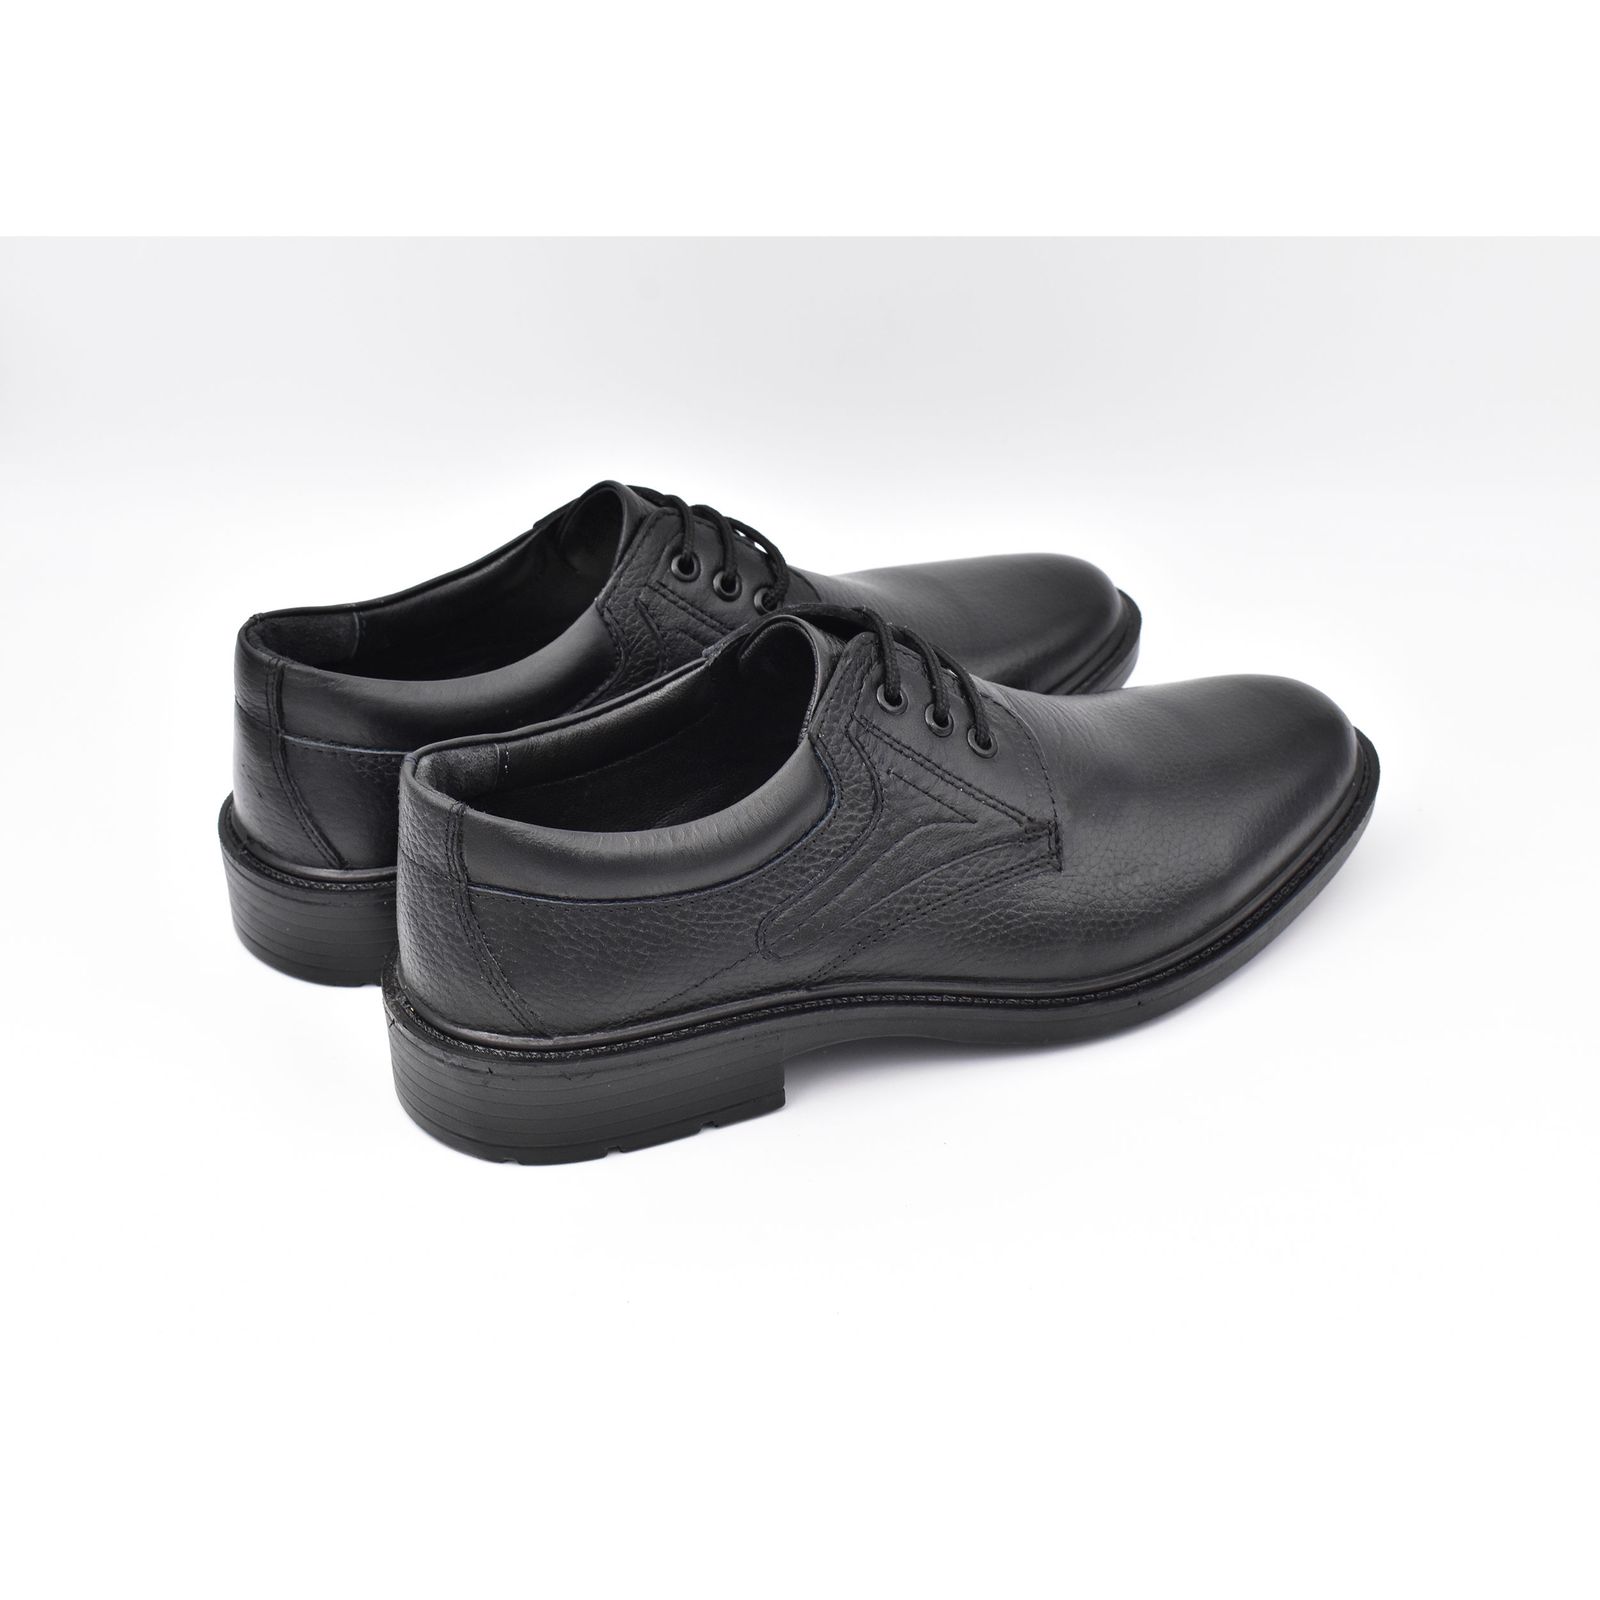 کفش مردانه پاما مدل Morano کد G1174 -  - 6